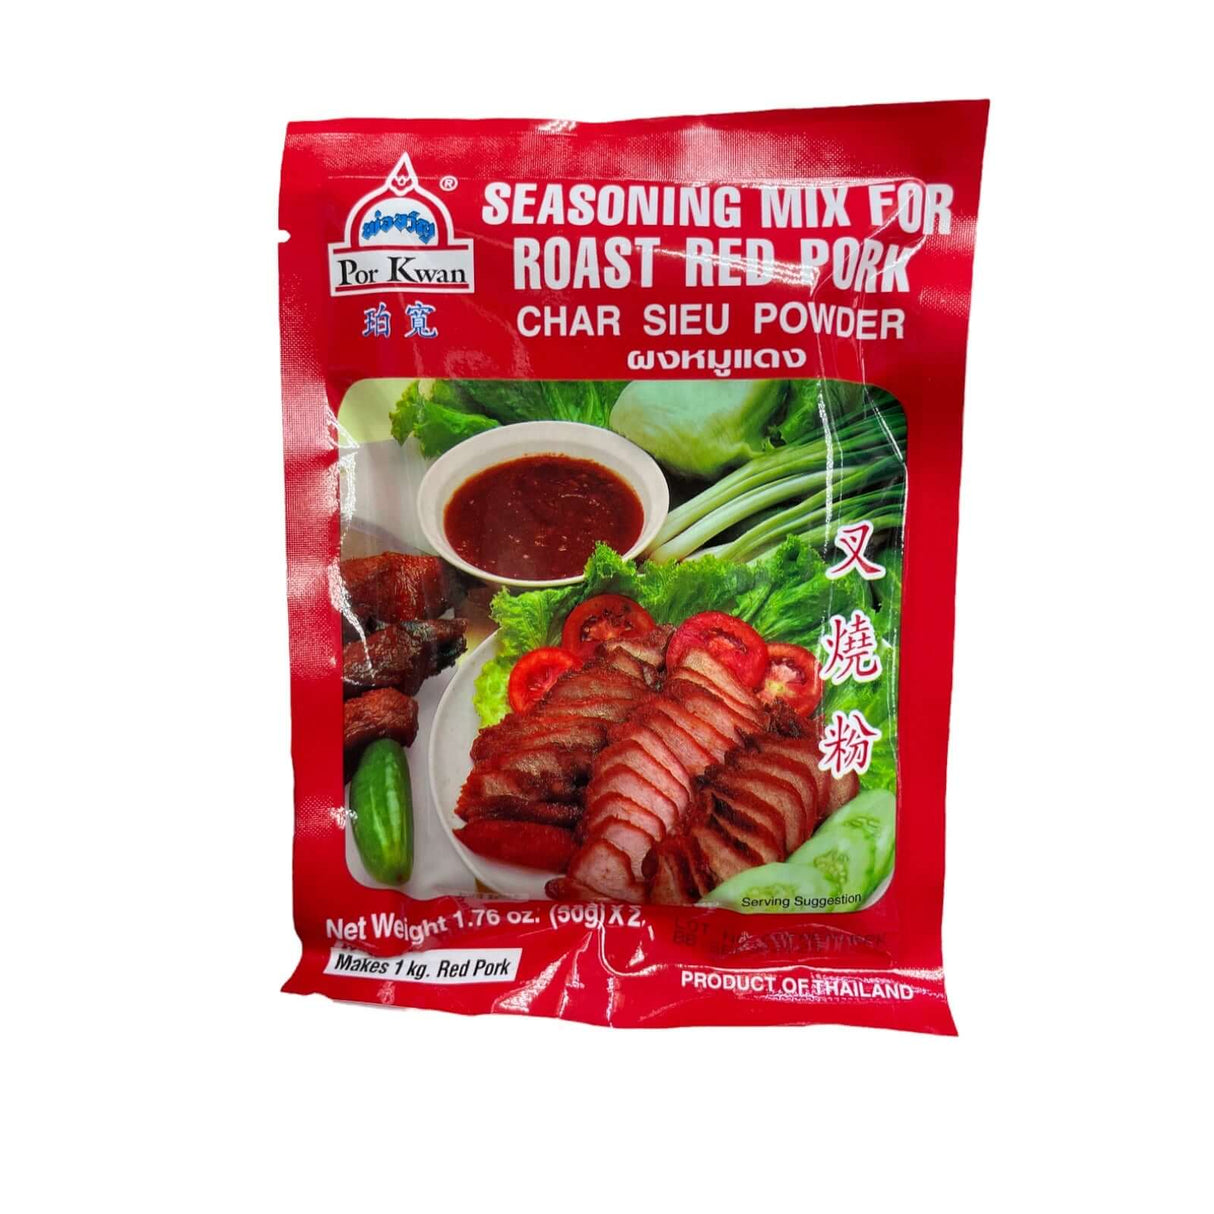 Por Kwan Seasoning Mix for Roasted Red Pork